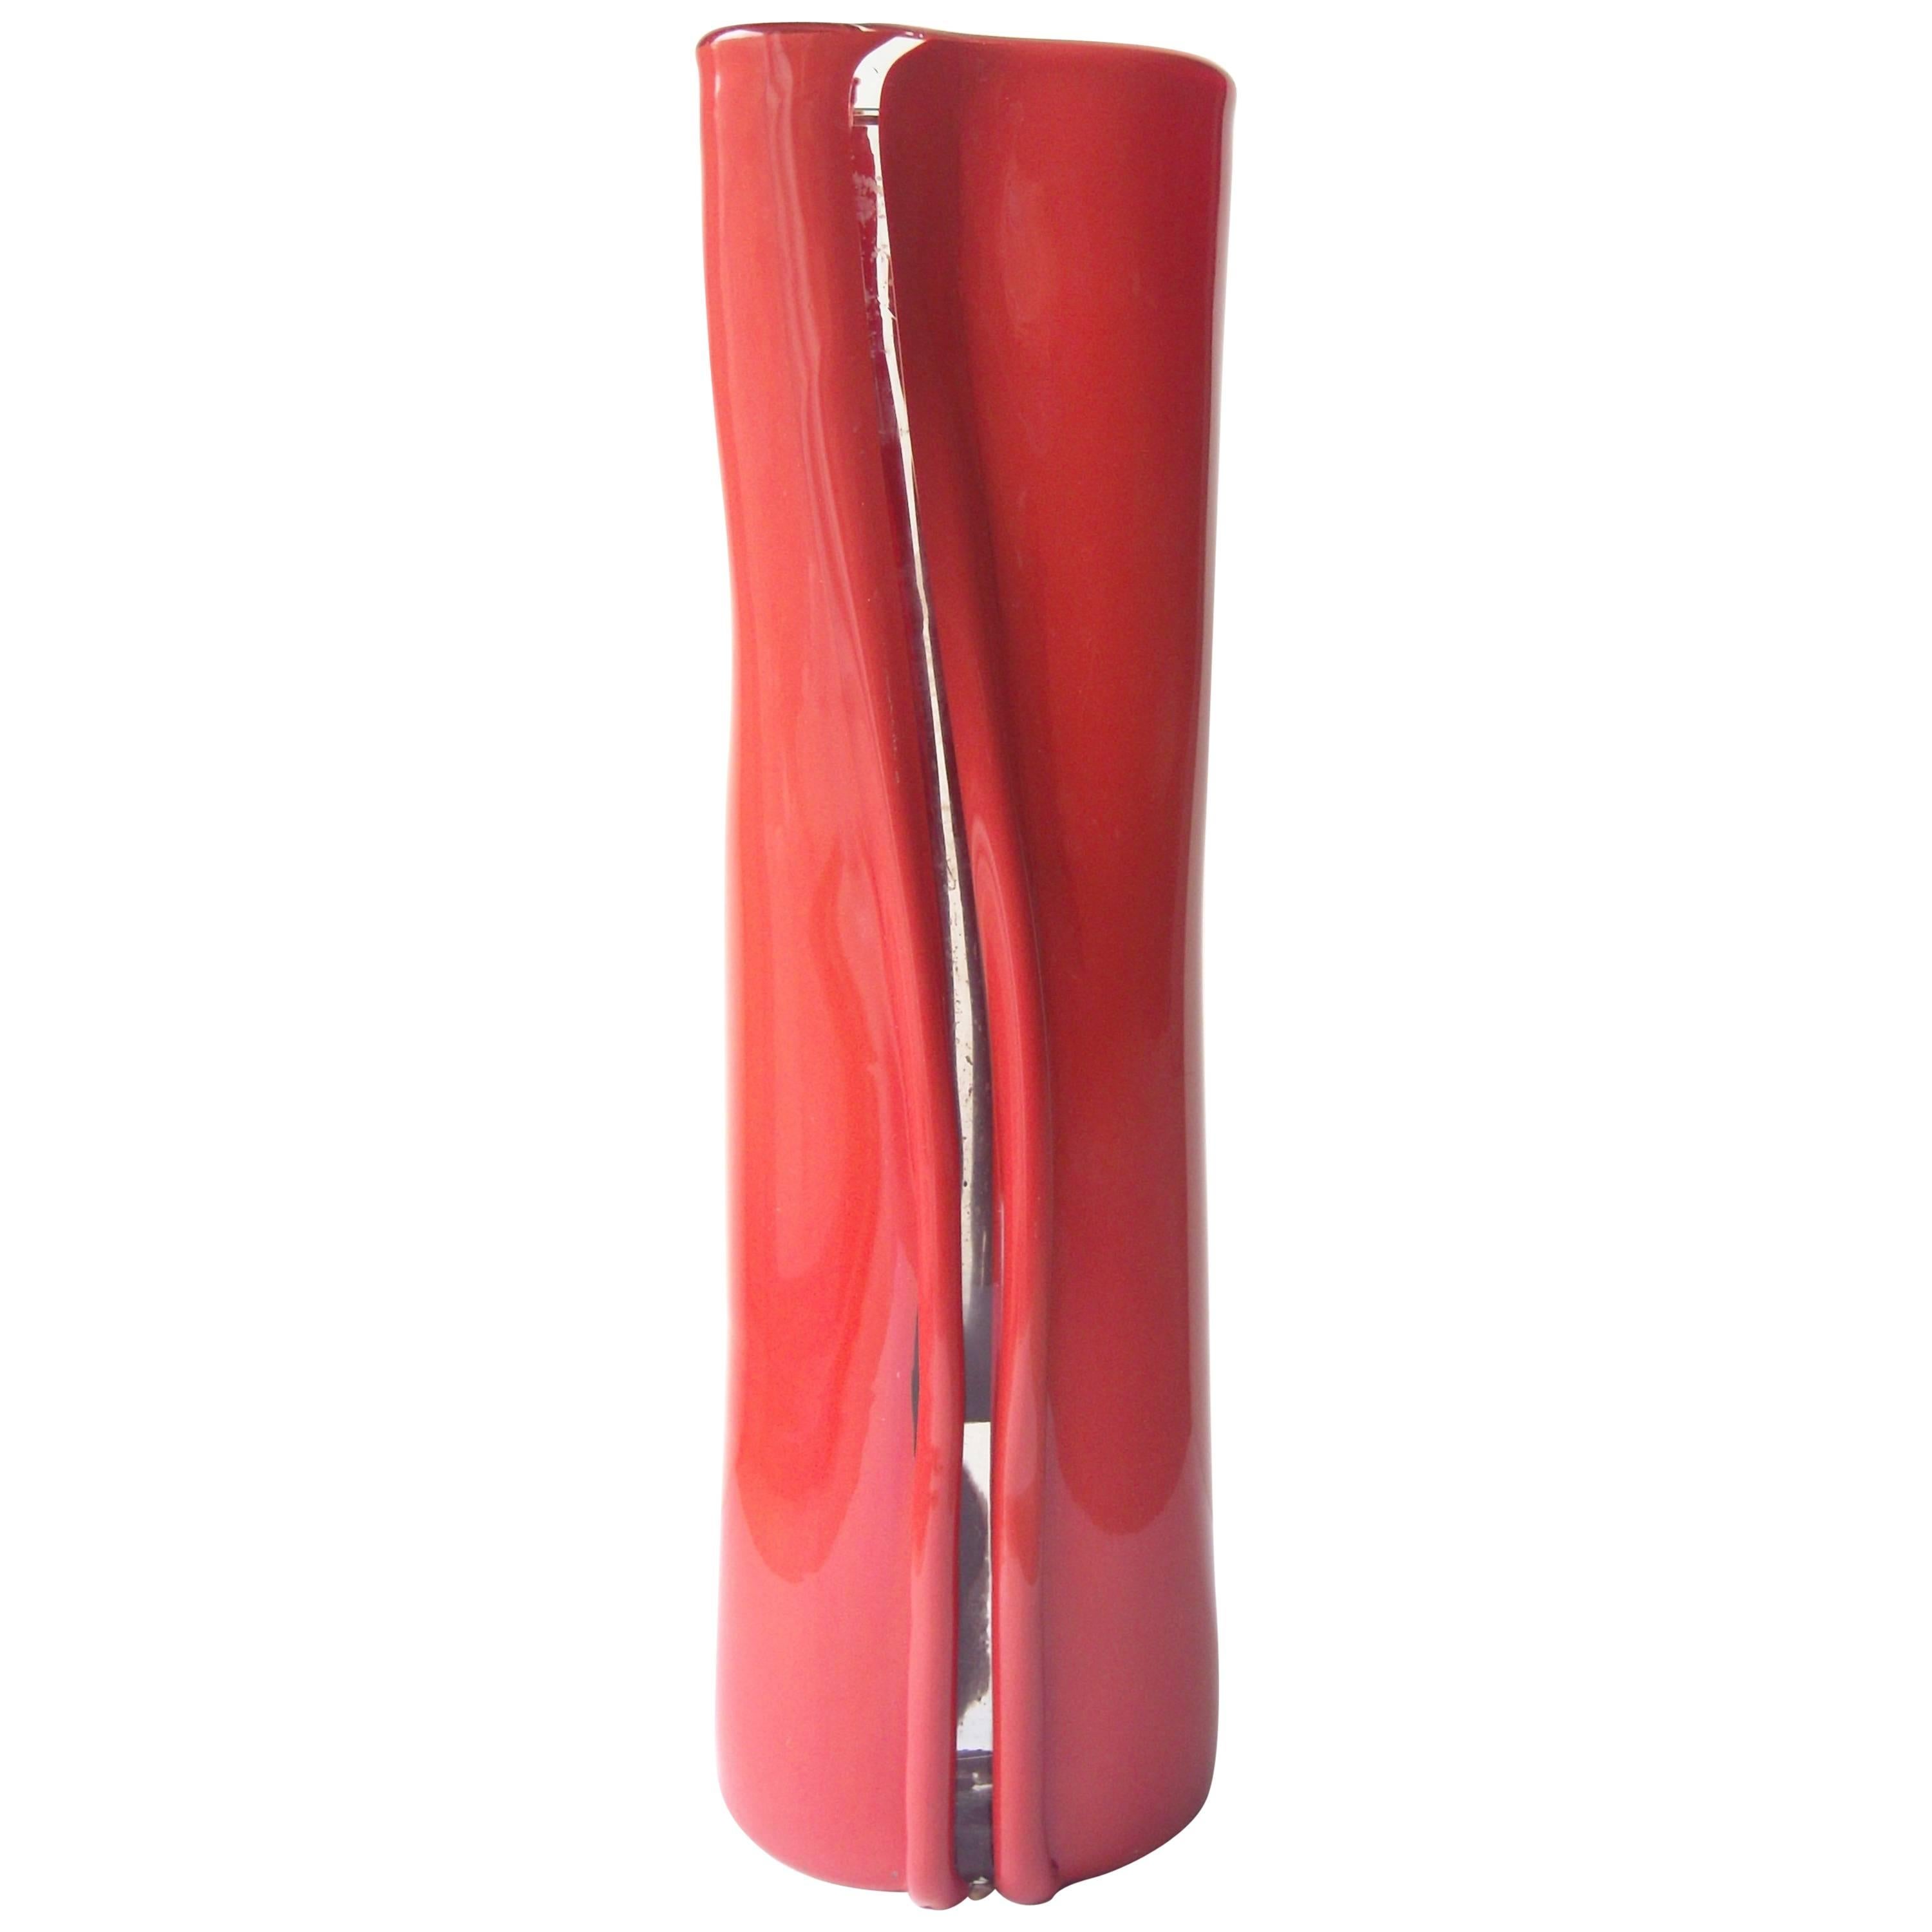 Toni Zuccheri Murano Glass Vase for Venini, " Scolpito", Signed